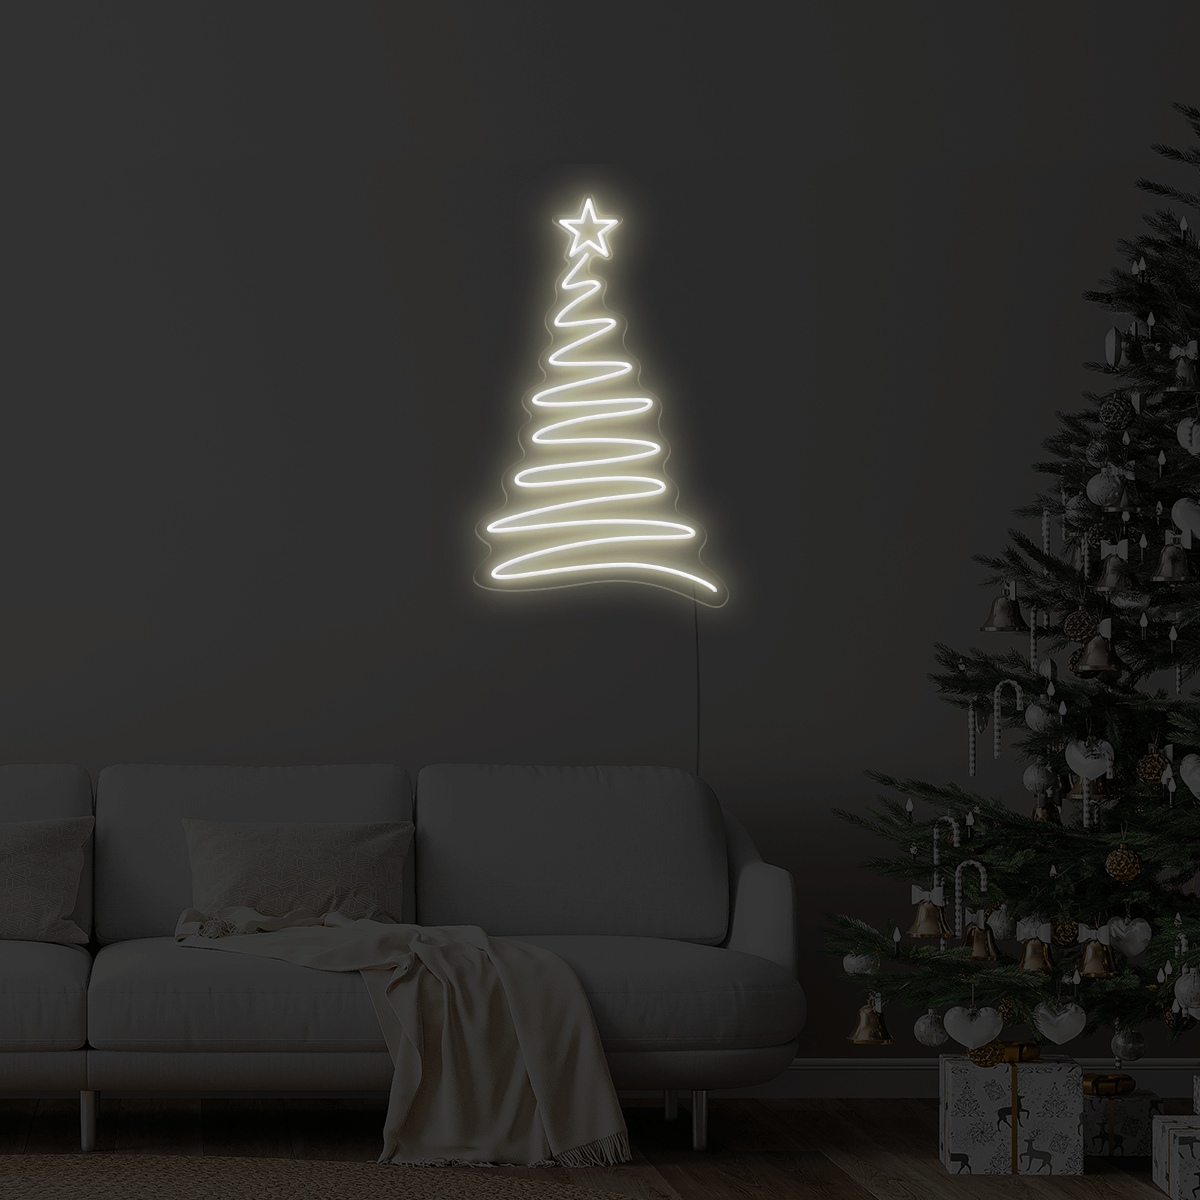 Christmas Tree LED Neon Sign